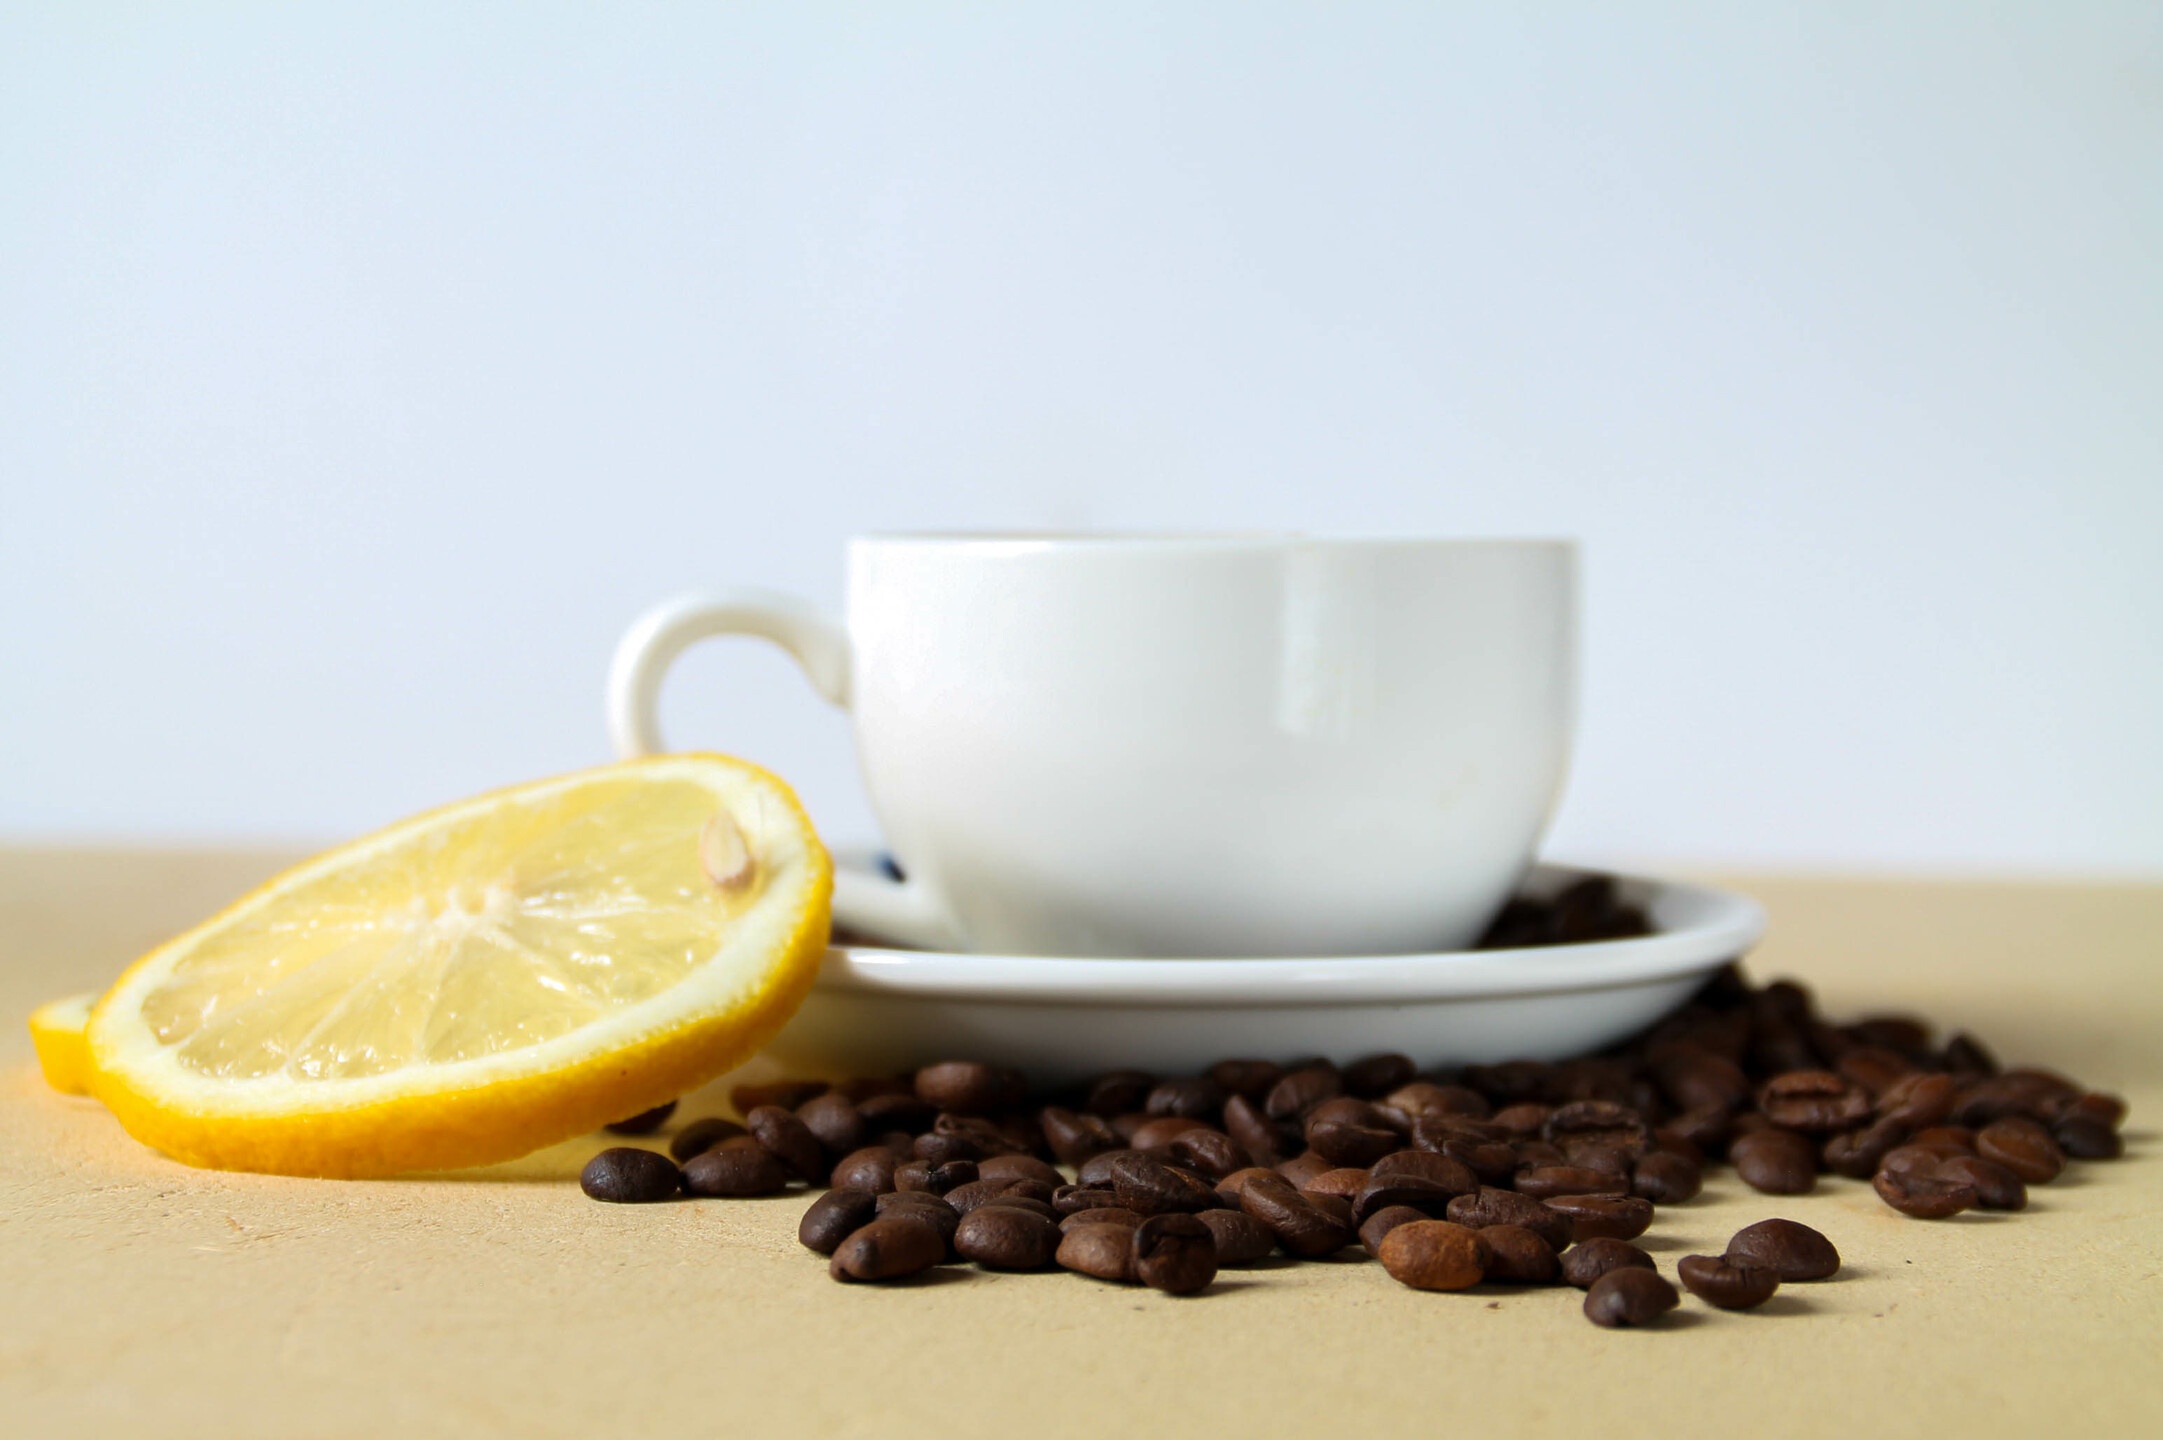 В кофе стали добавлять лимон, чтобы сбросить лишние килограммы: работает ли это?